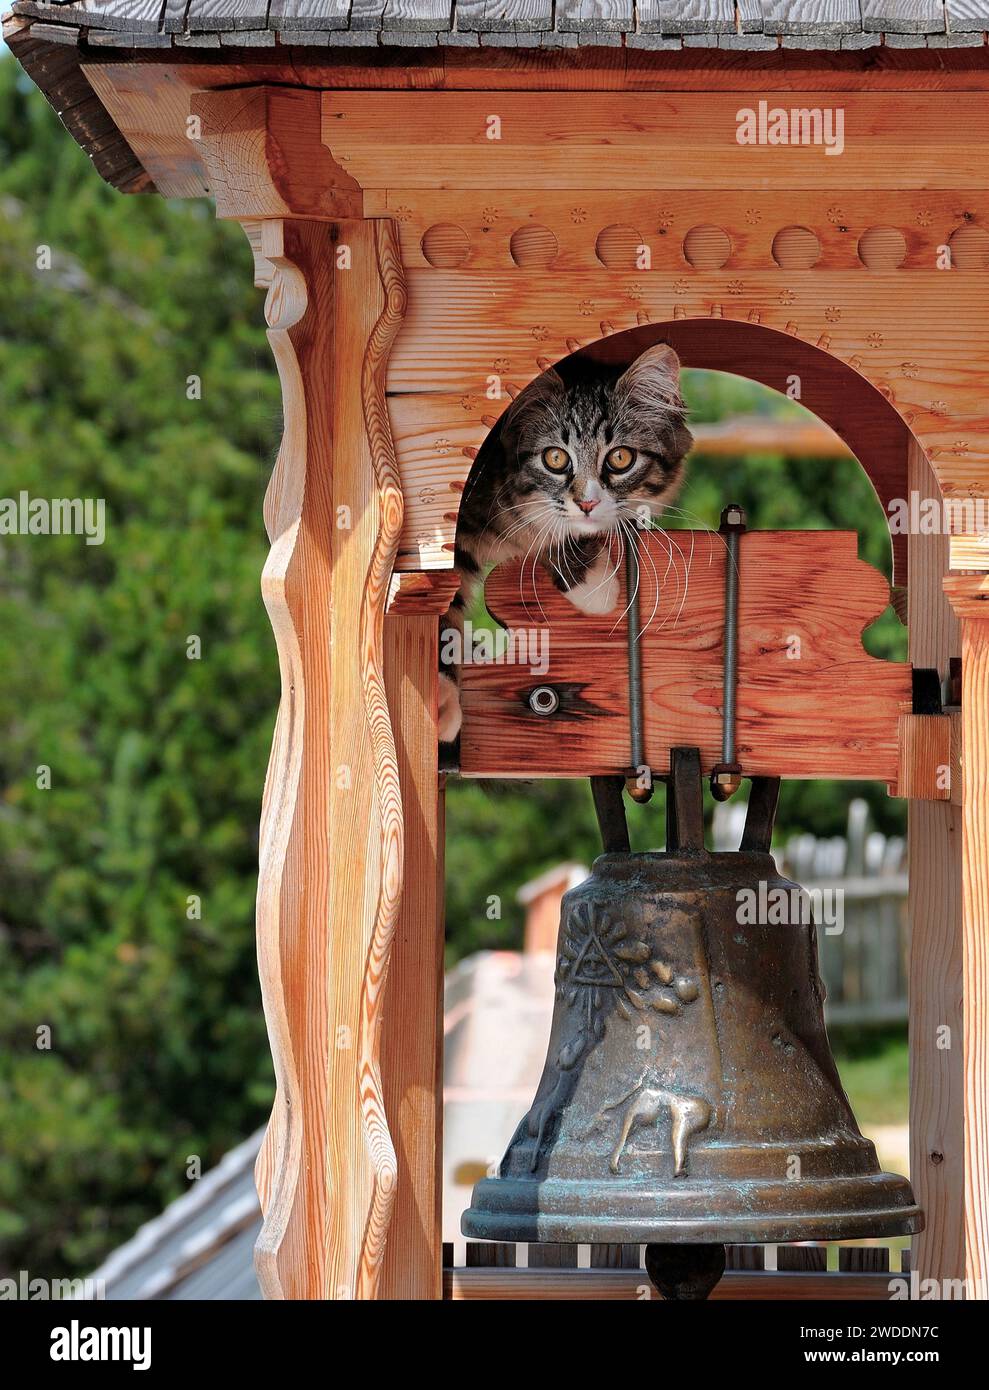 Un piccolo gatto cerca di imparare a suonare una campana Stock Photo